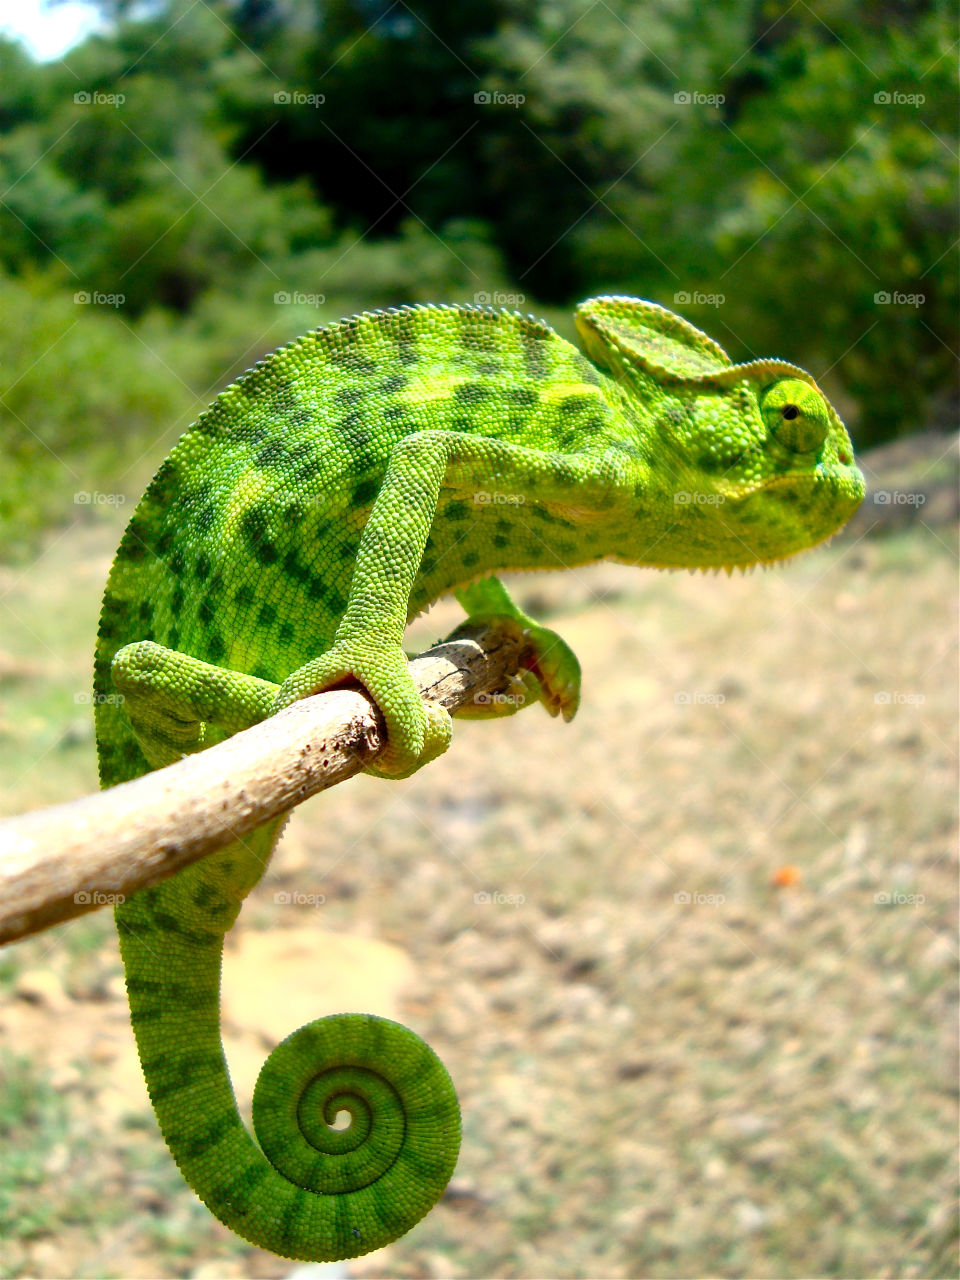 Green chameleon on branch